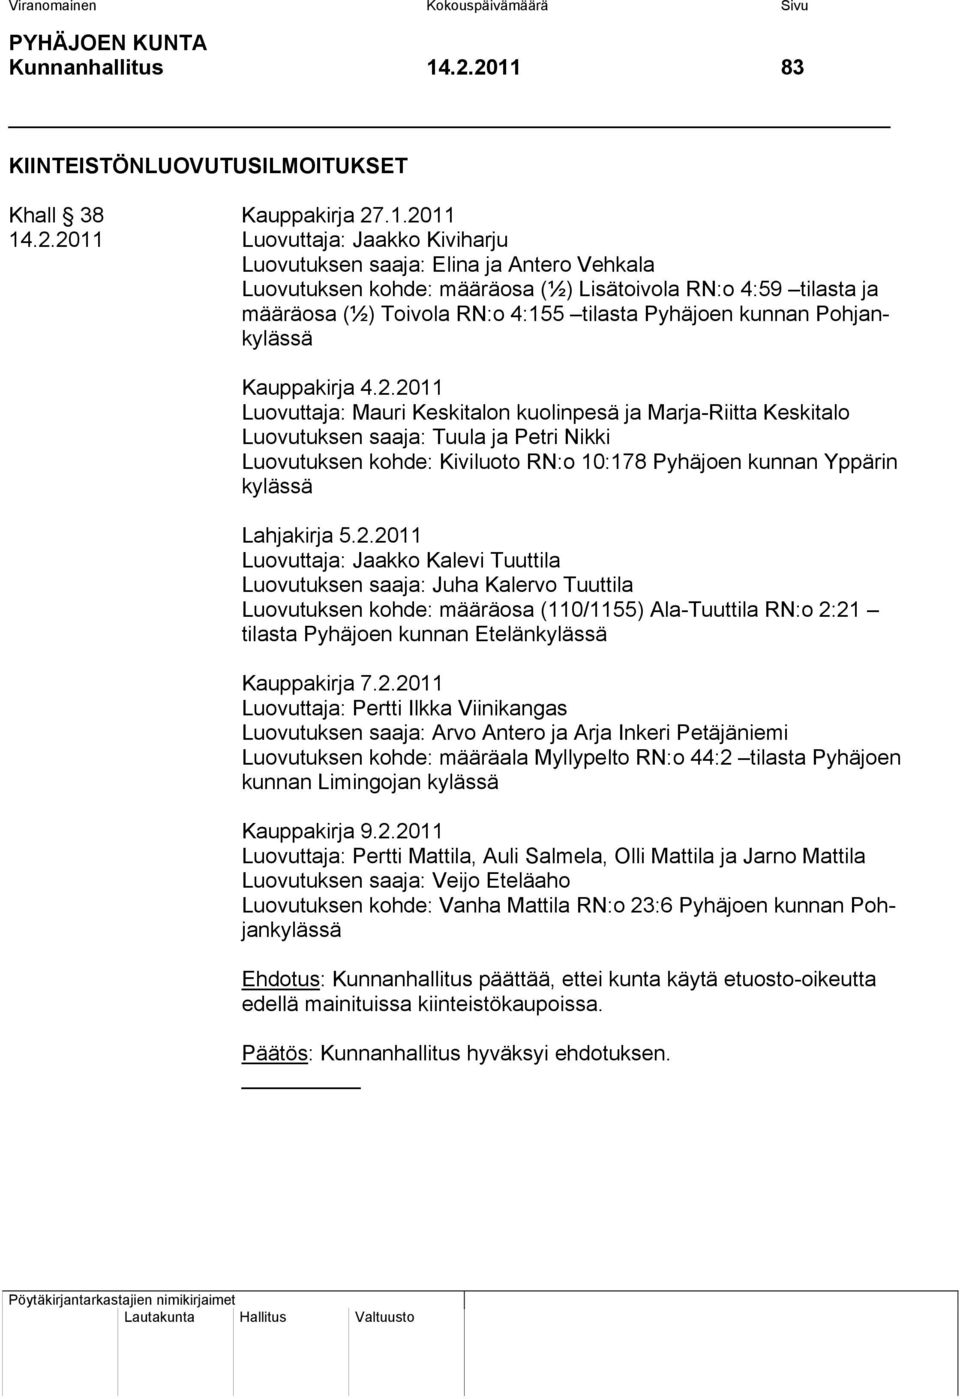 RN:o 4:59 tilasta ja määräosa (½) Toivola RN:o 4:155 tilasta Pyhäjoen kunnan Pohjankylässä Kauppakirja 4.2.